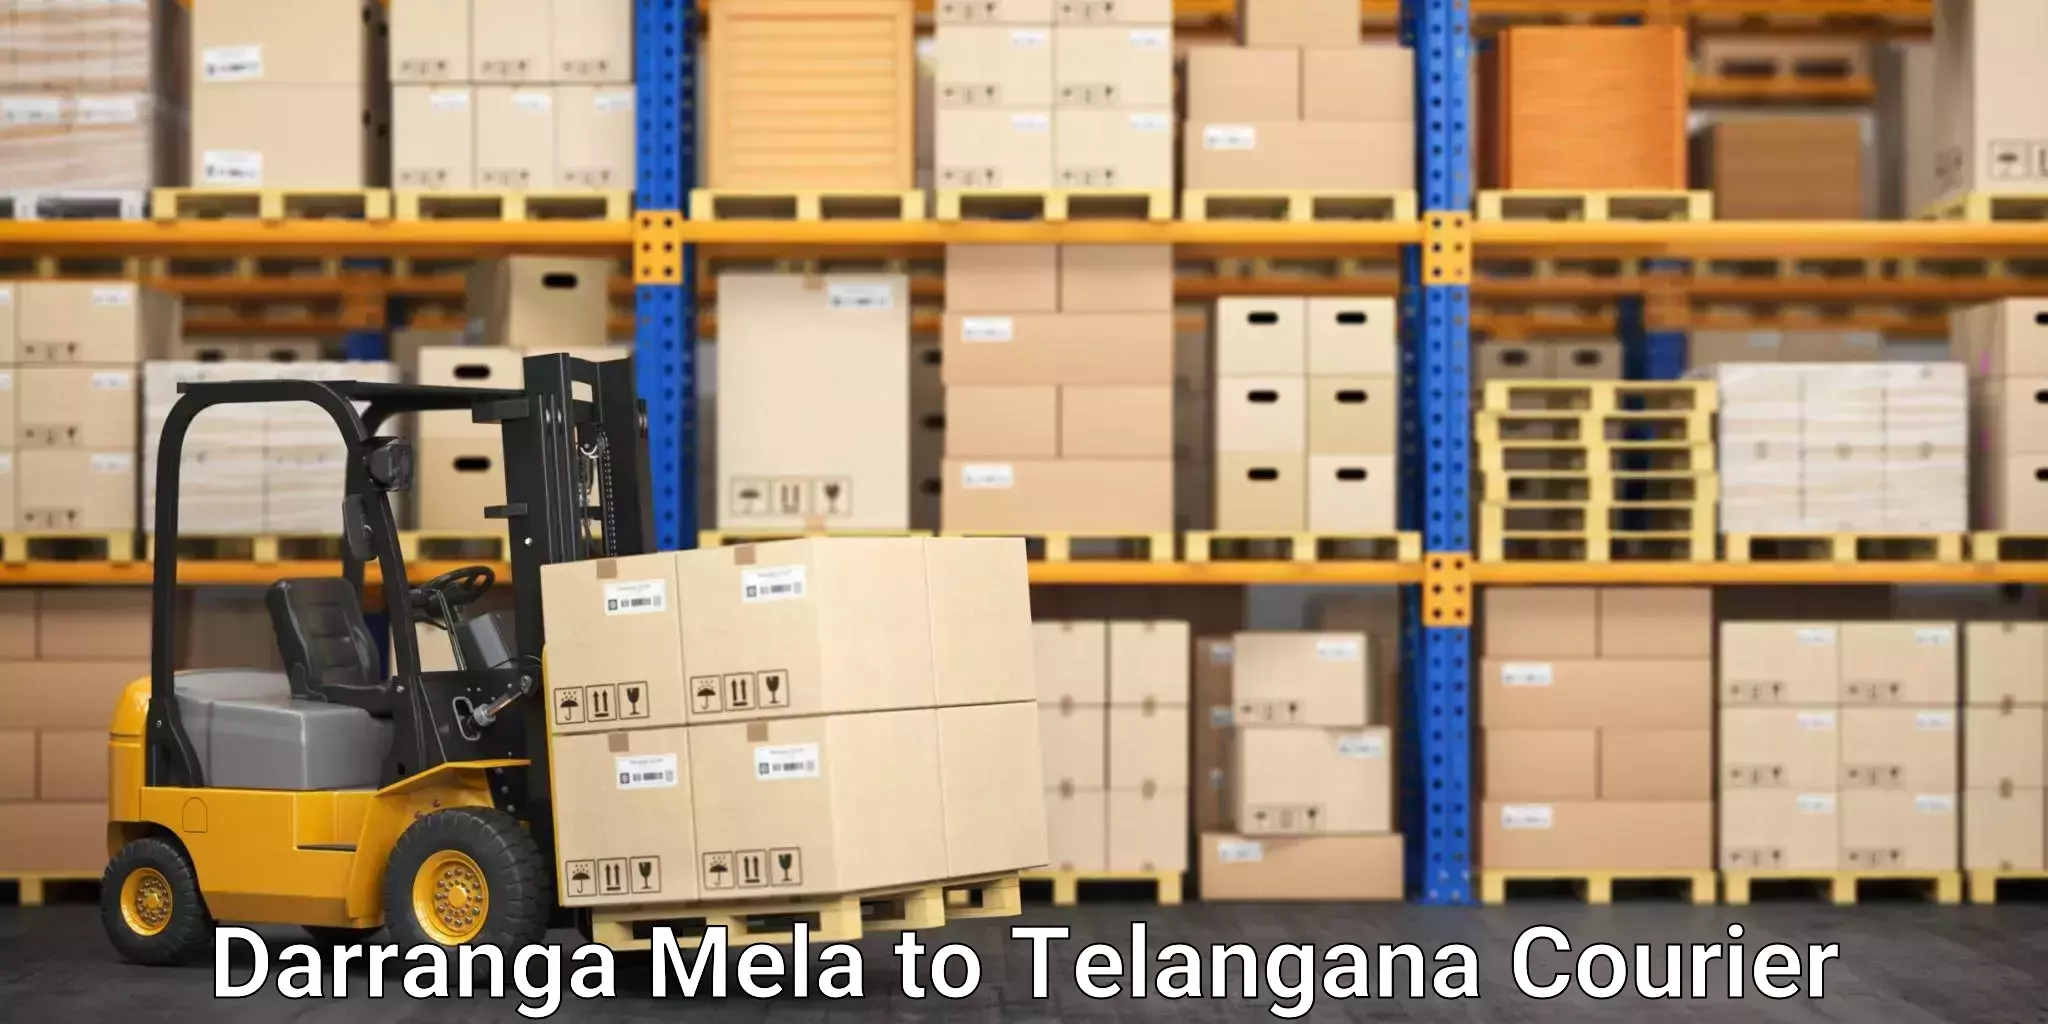 Residential courier service Darranga Mela to Manuguru